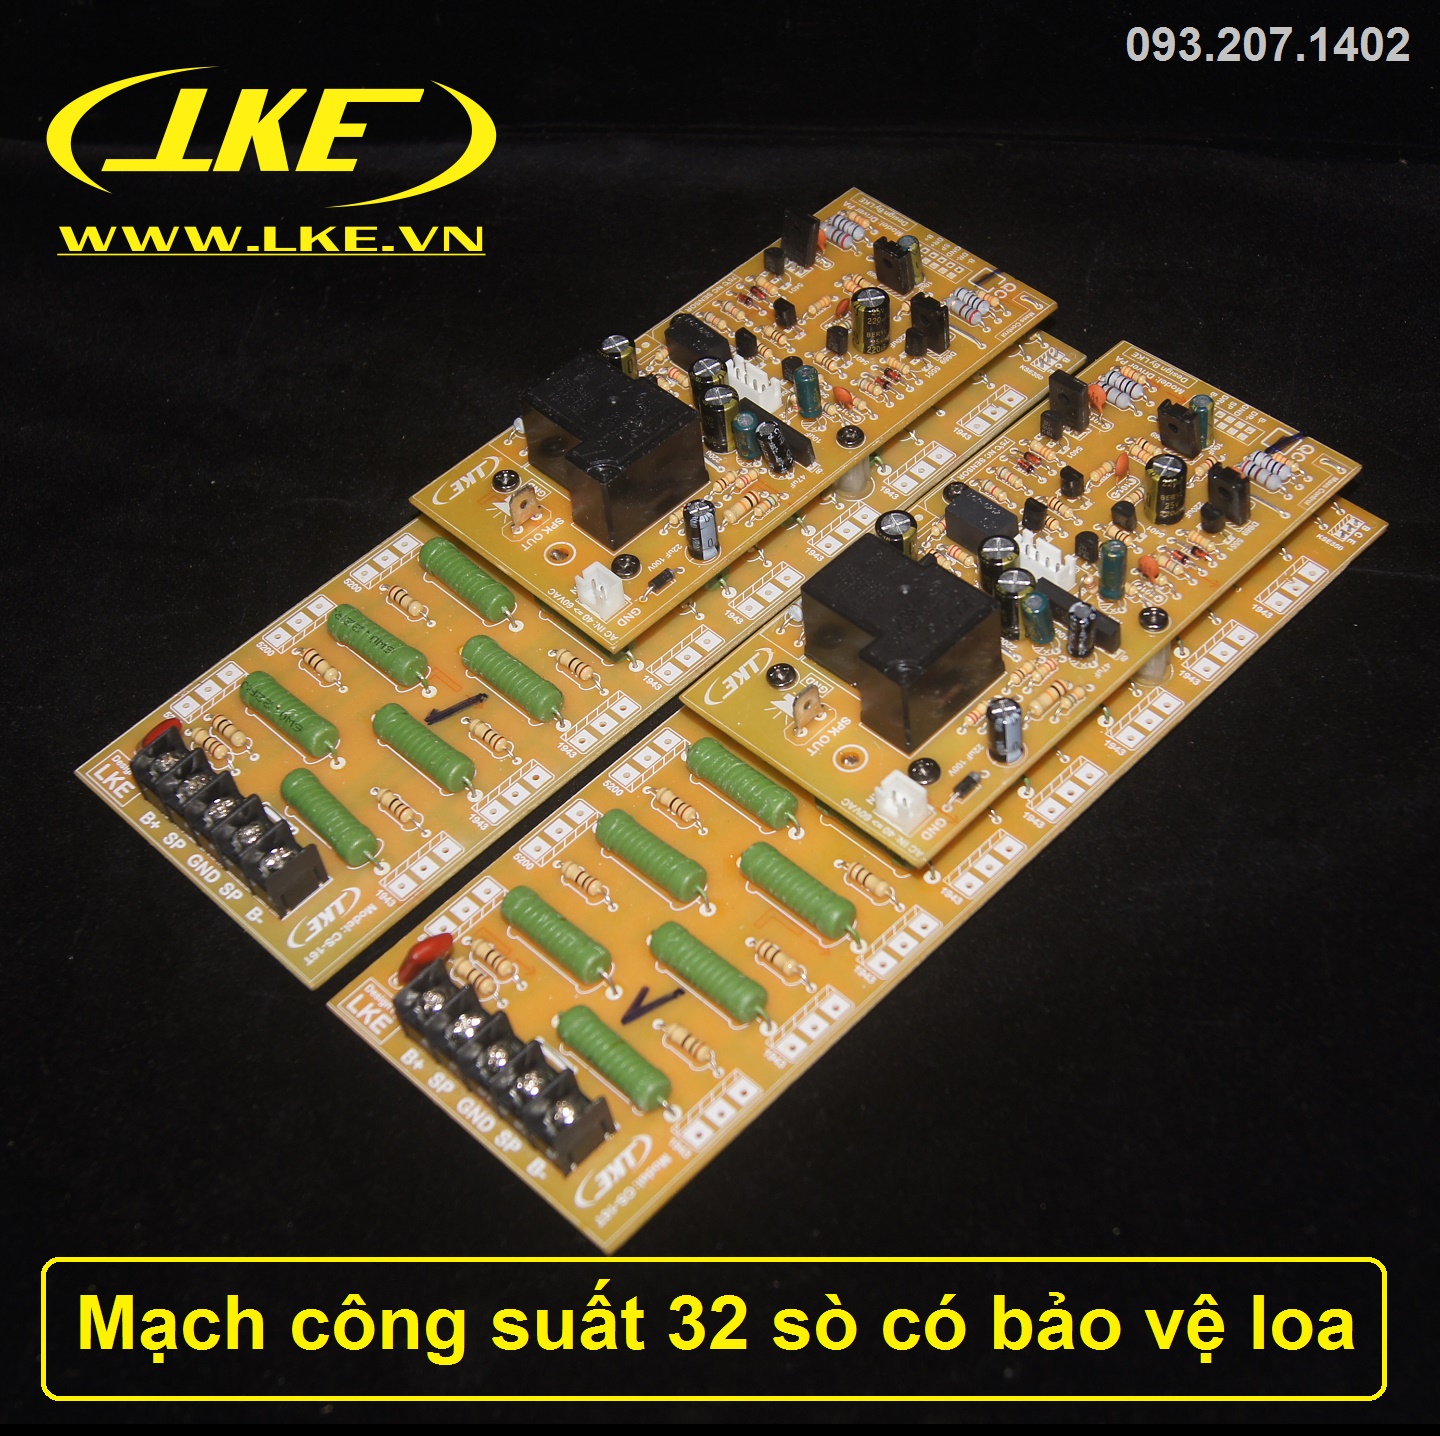 mạch công suất 32 sò tích hợp bảo vệ loa LKE